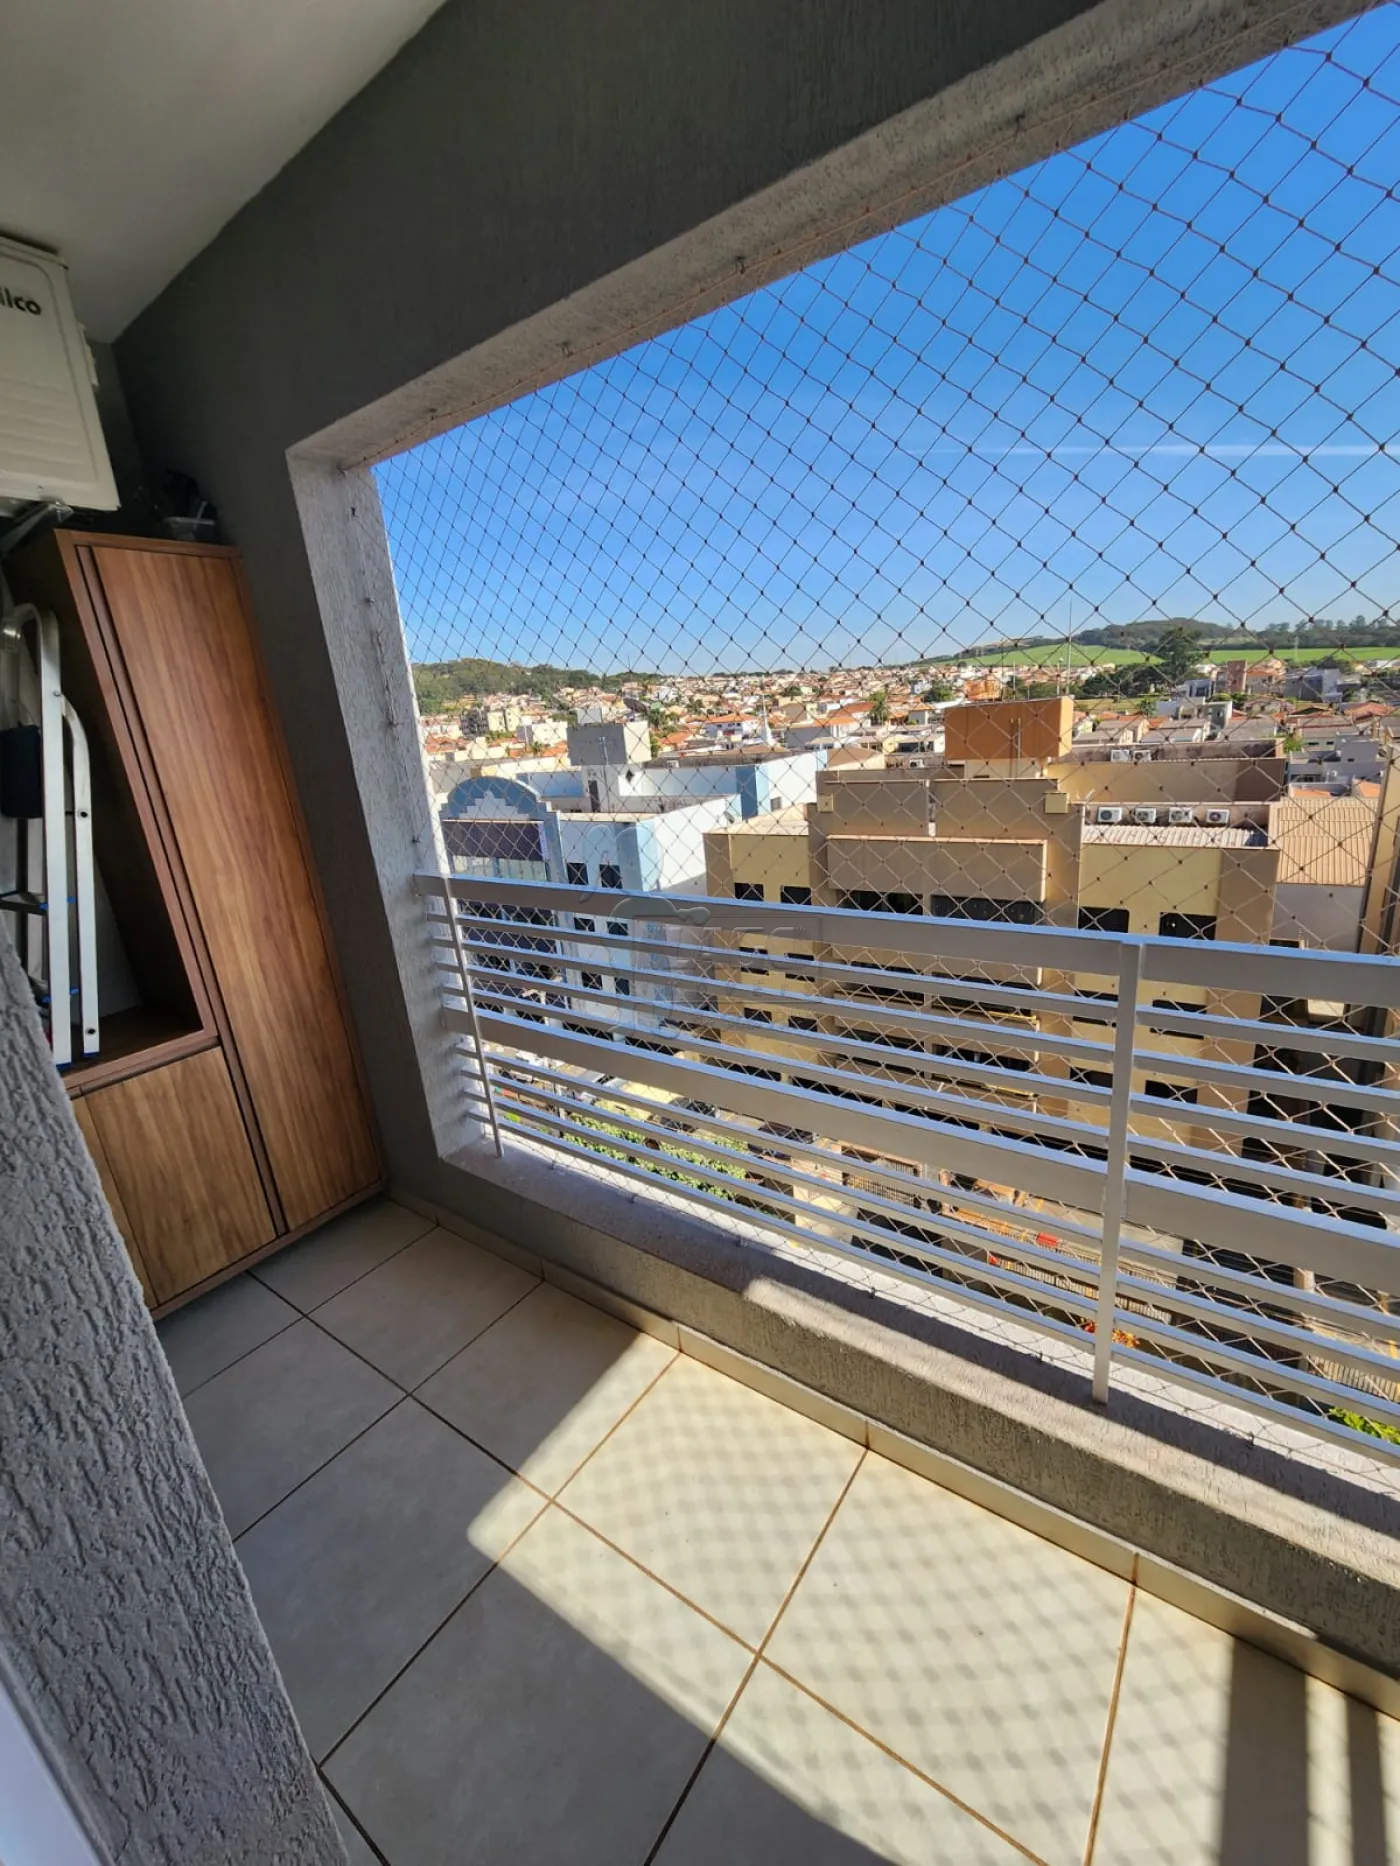 Comprar Apartamento / Padrão em Ribeirão Preto R$ 360.000,00 - Foto 4